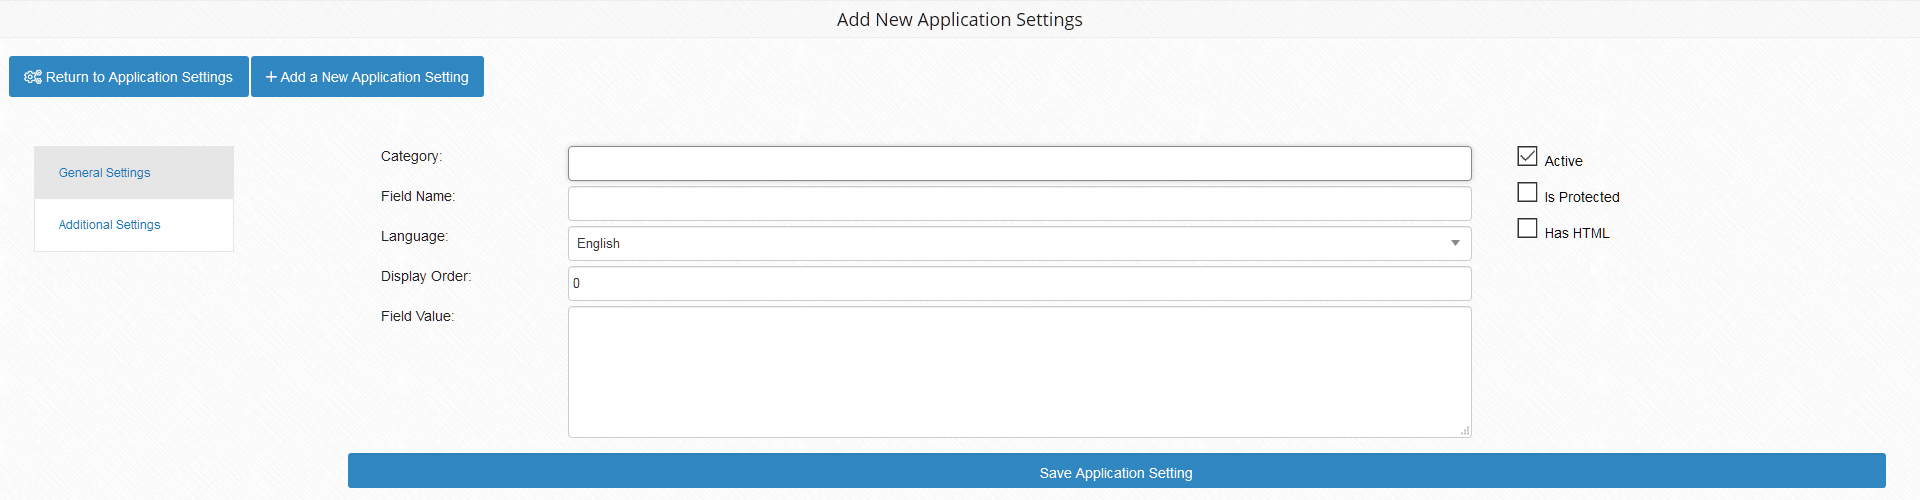 Application Settings Advanced